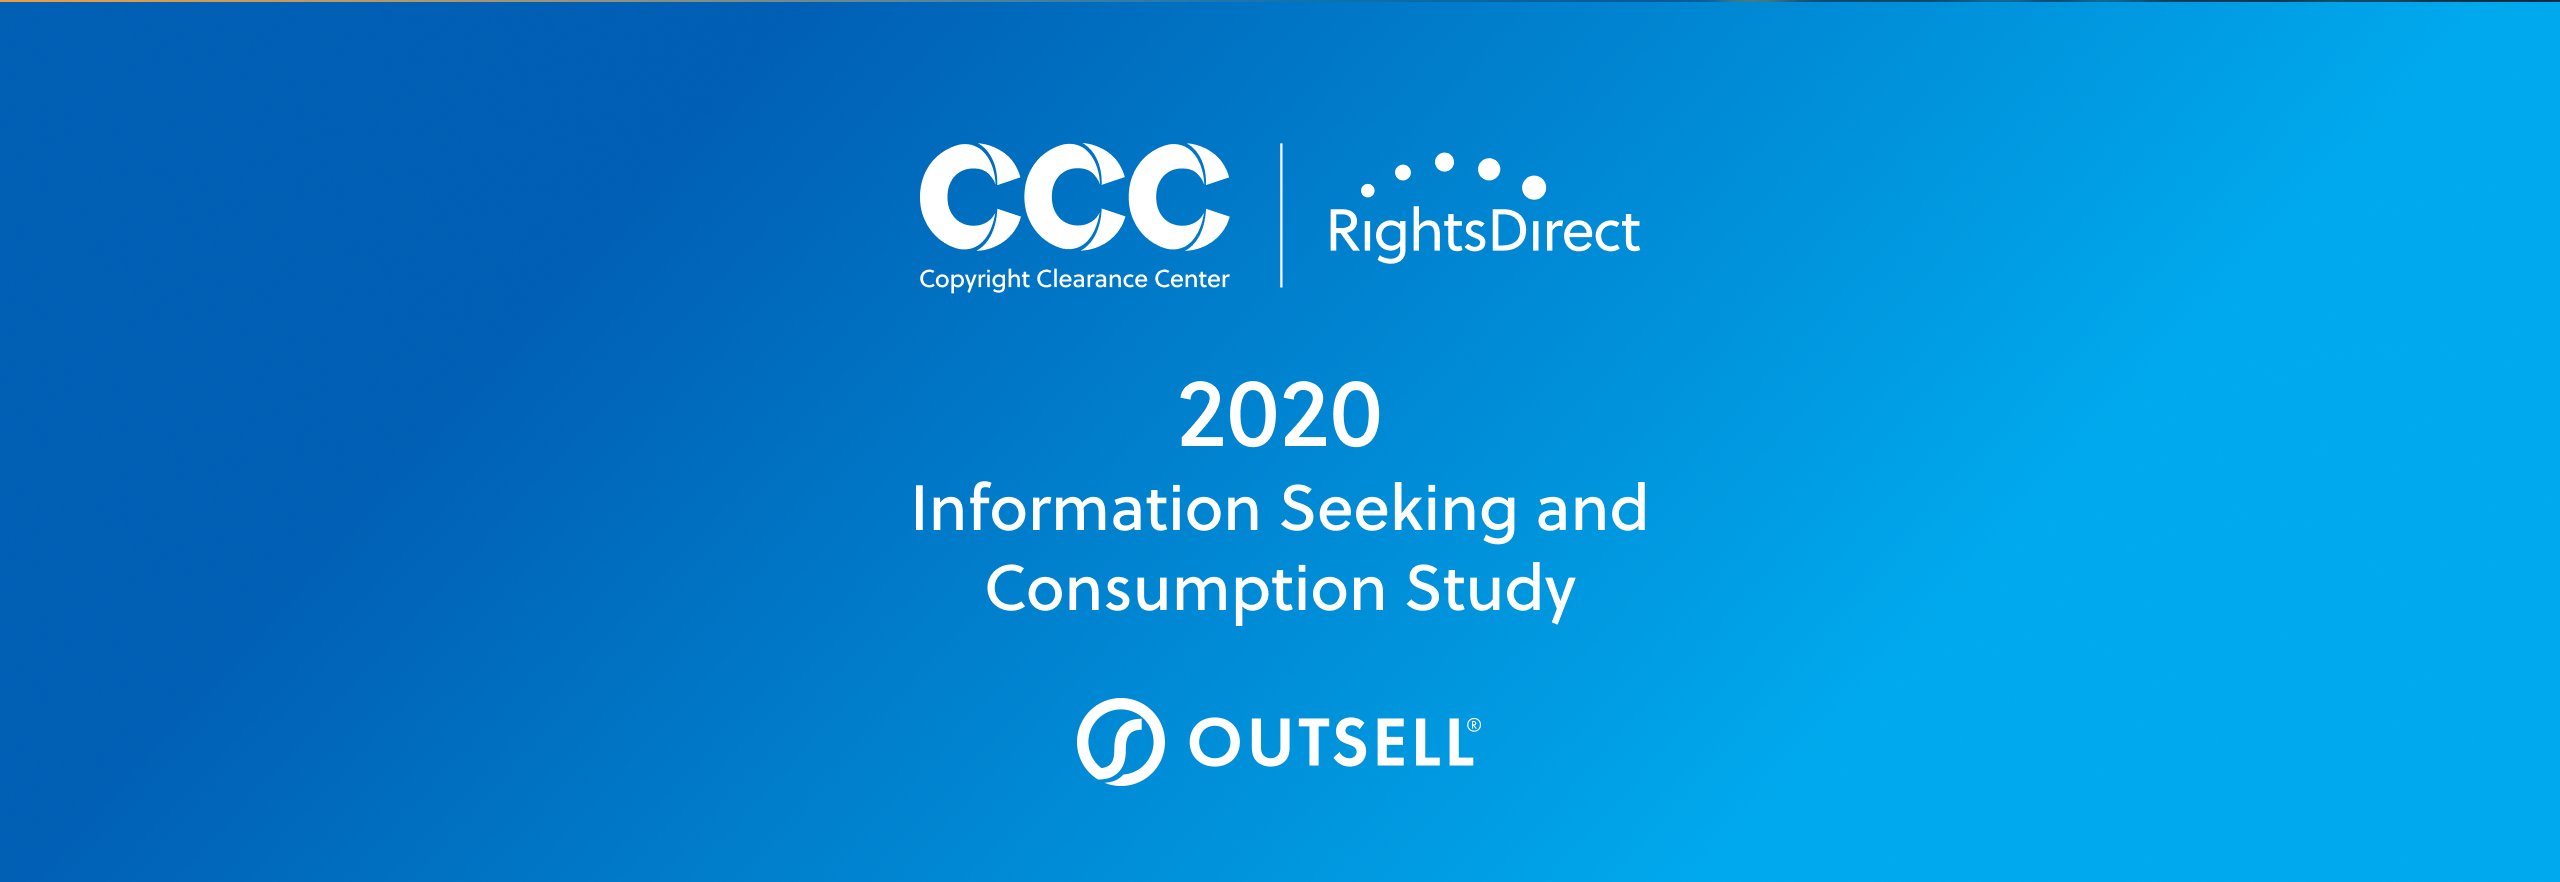 万博手机客户端苹果版版权清算中心，RightsDirect, Outsell: 2020信息检索与消费研究